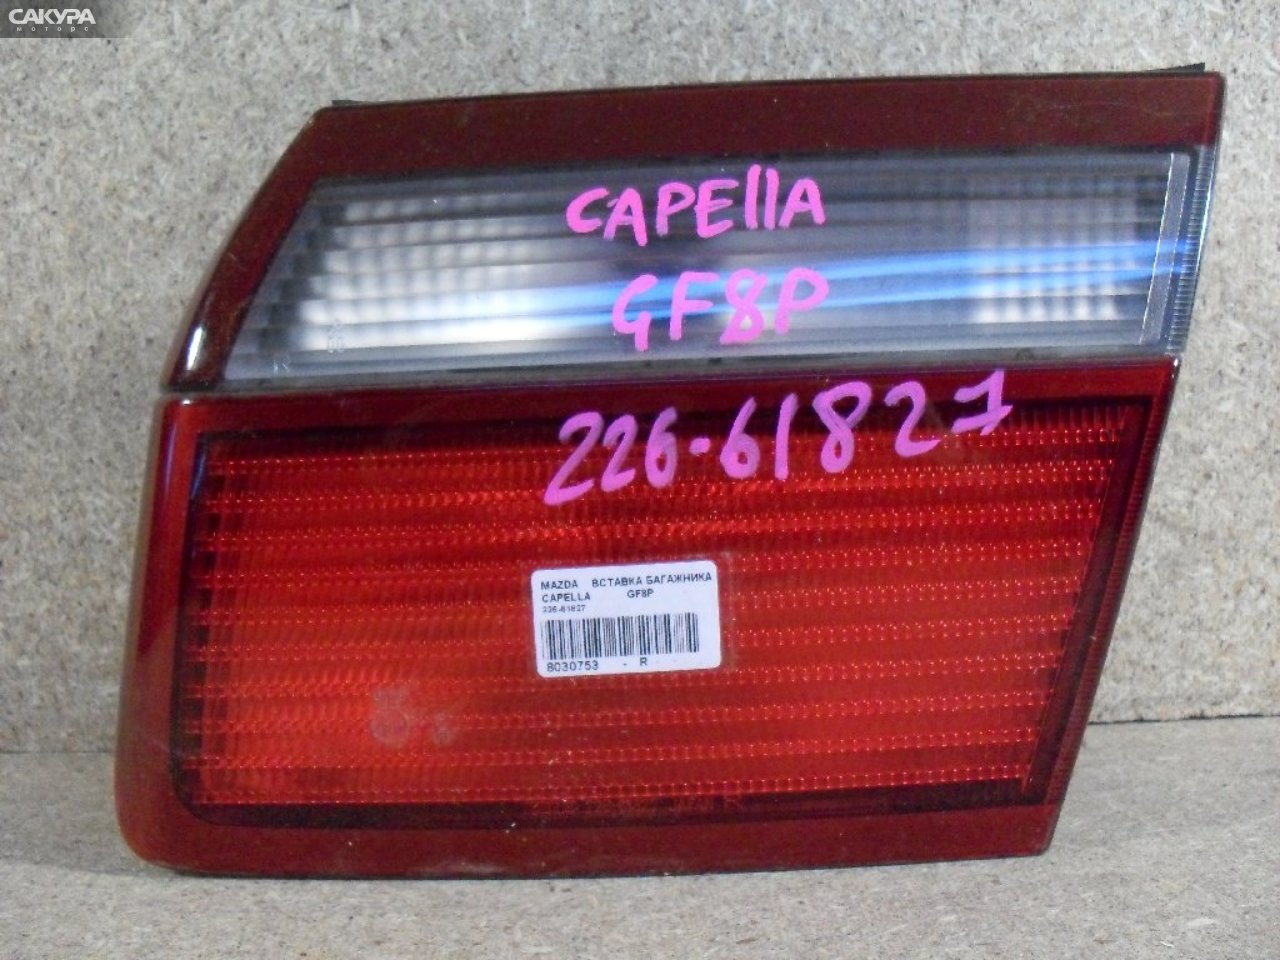 Фонарь вставка багажника правый Mazda Capella GF8P 226-61827: купить в Сакура Абакан.